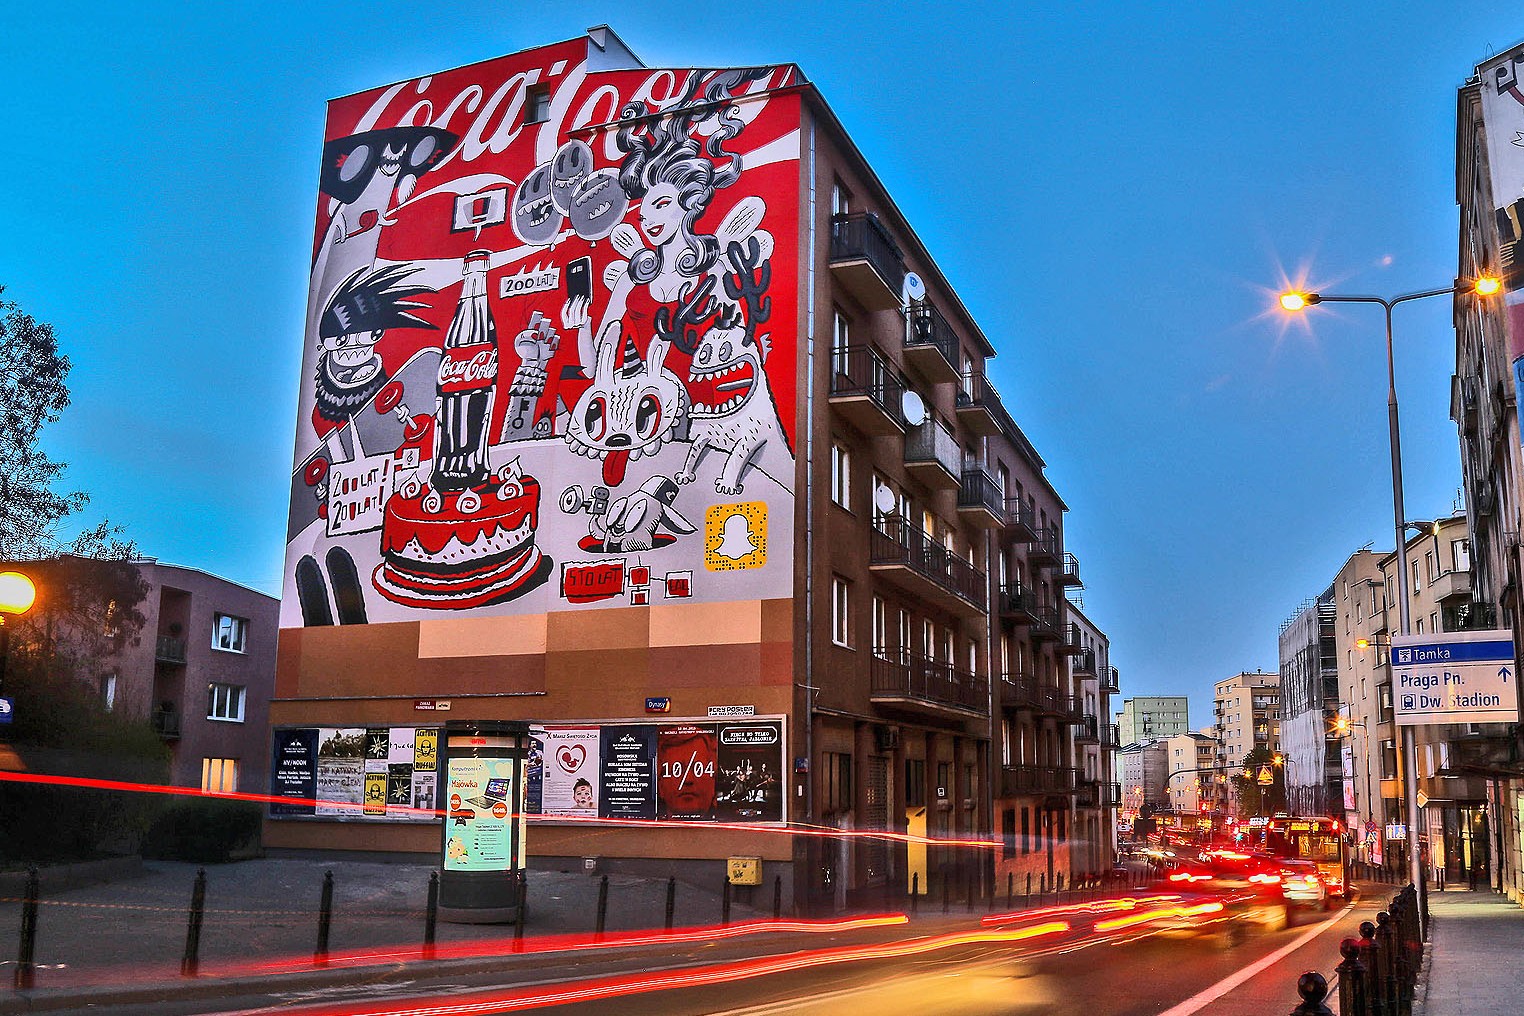 Urodziny Coca Cola w Warszawie Powiśle mural przy ulicy Tamka | Seria murali na zamówienie Coca Cola | Portfolio